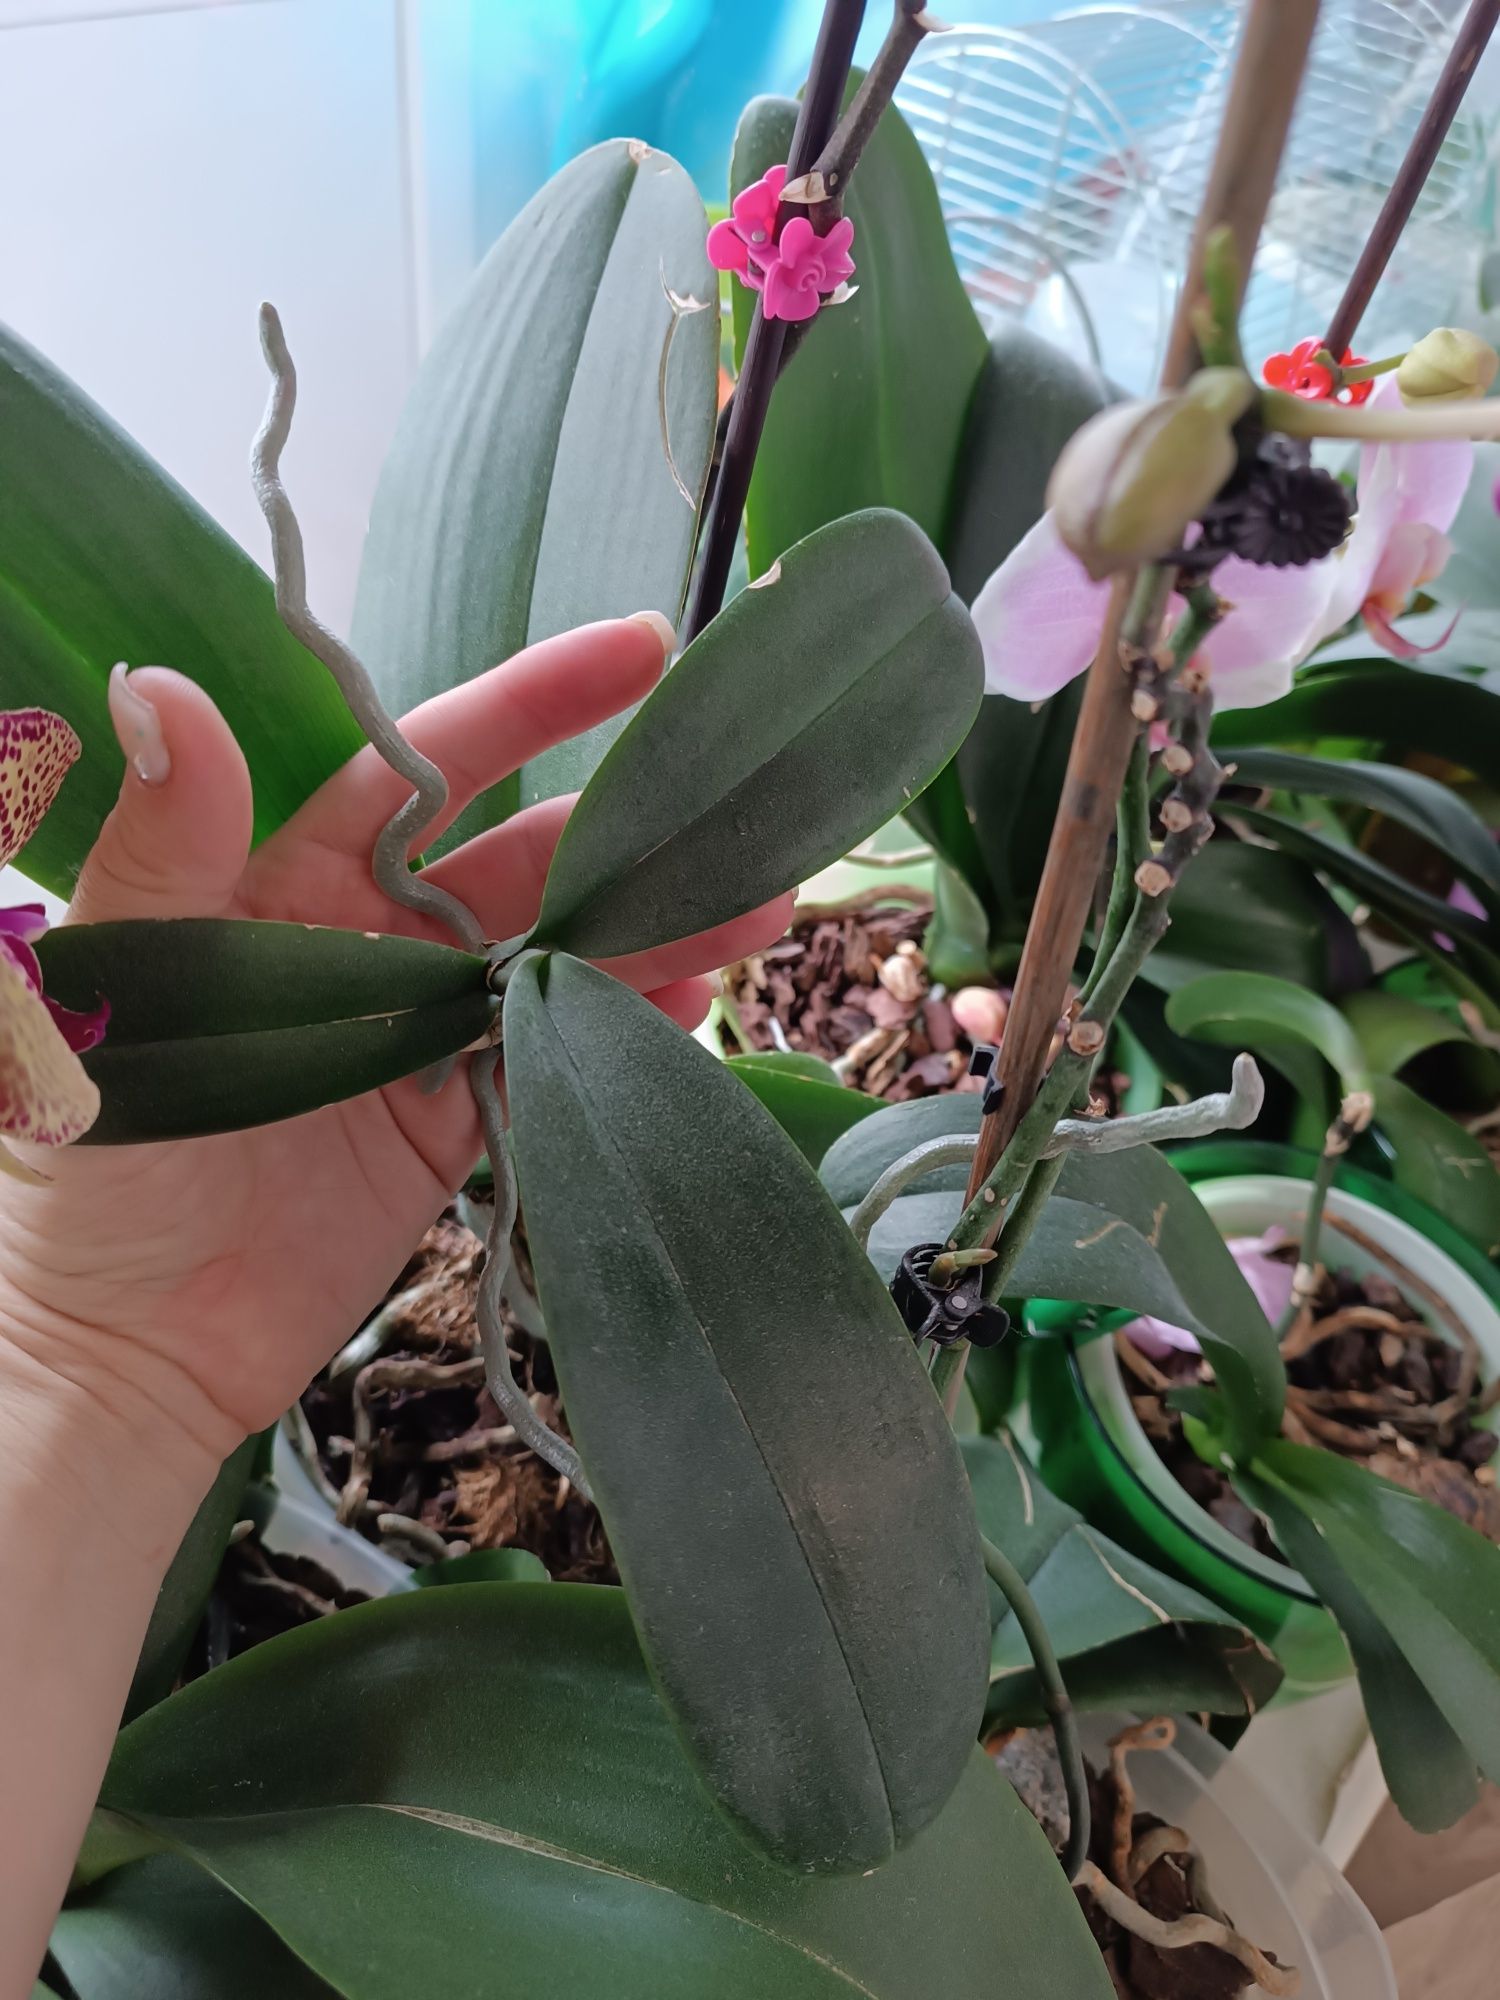 Продам детку орхидеи